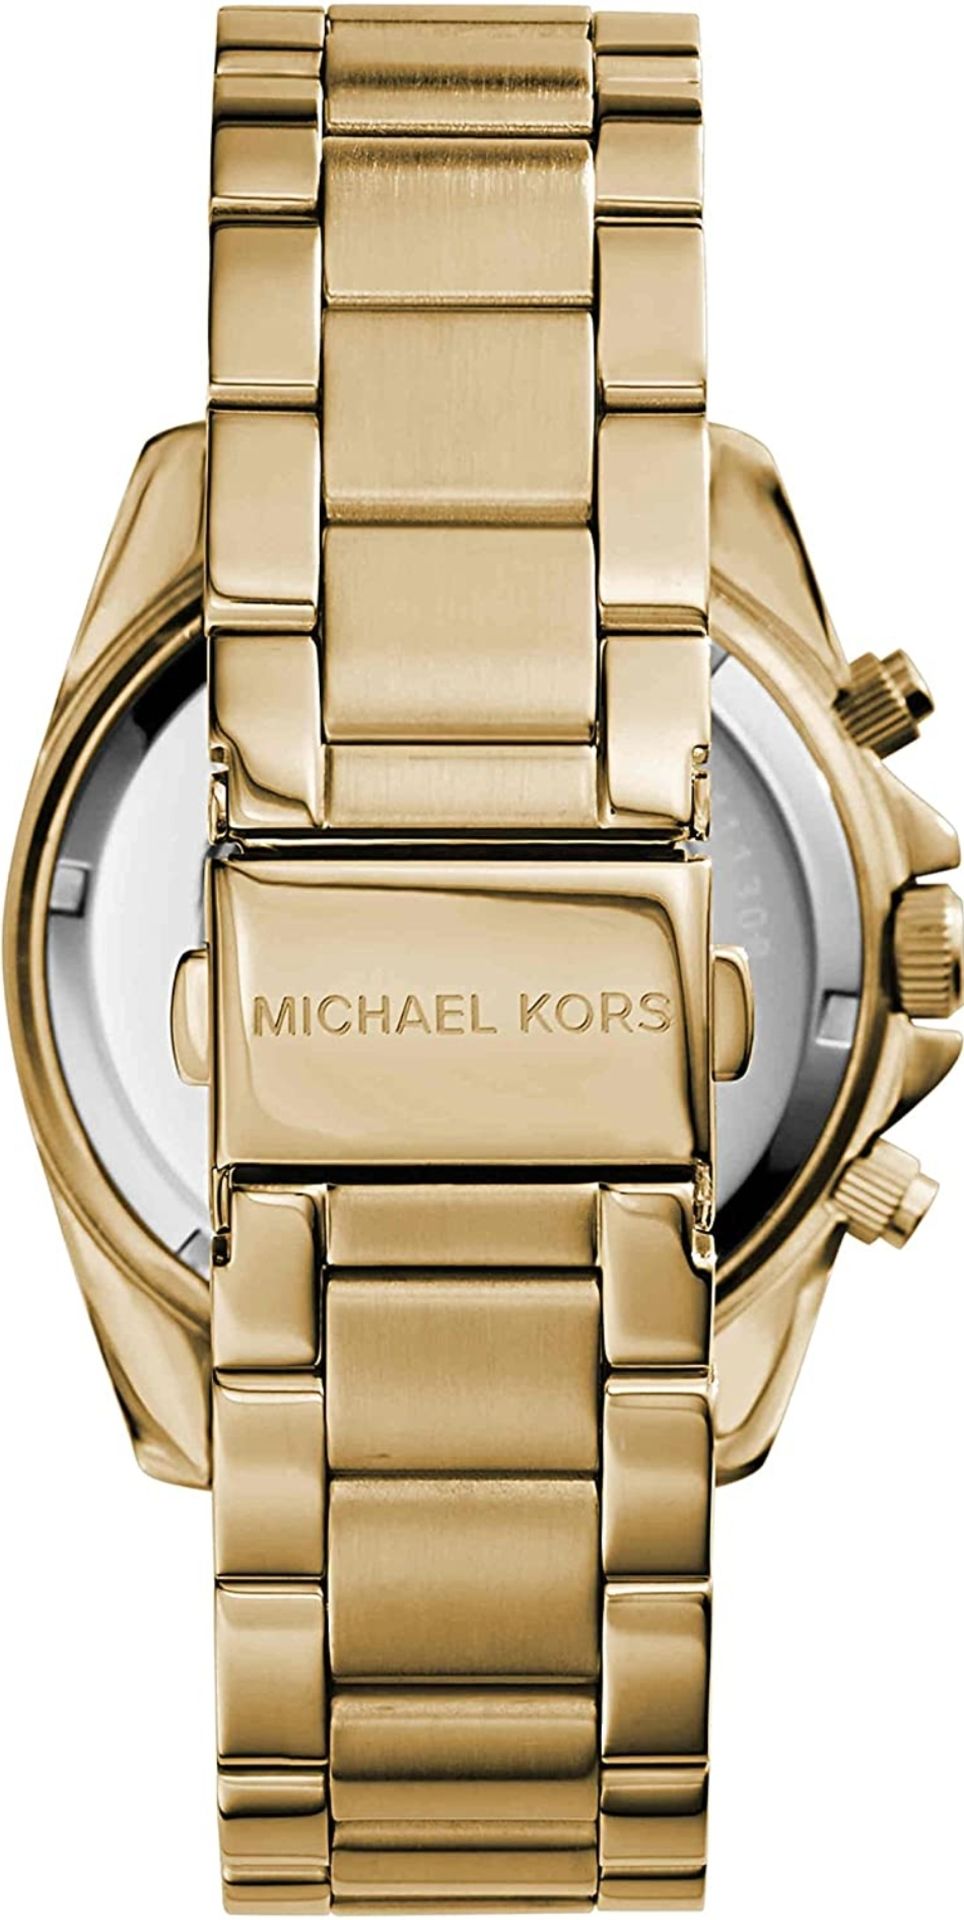 Michael Kors MK5166 Ladies Blair Watch - Image 5 of 10